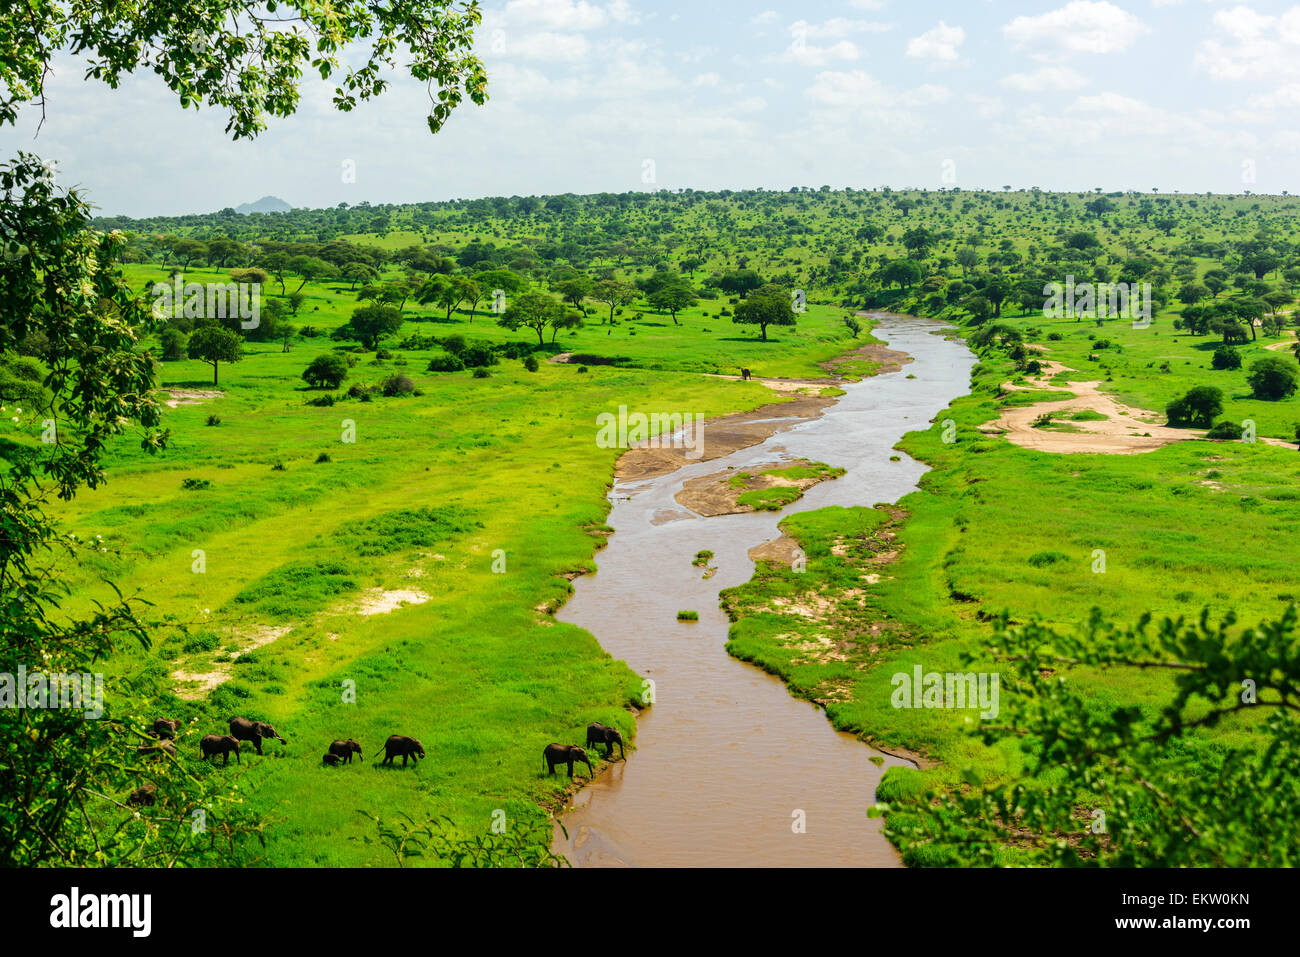 Loxodonta africana landscape with Elephants drinking water in Trangire River in Tarangire National Park, Manyara Region,Tanzania Stock Photo